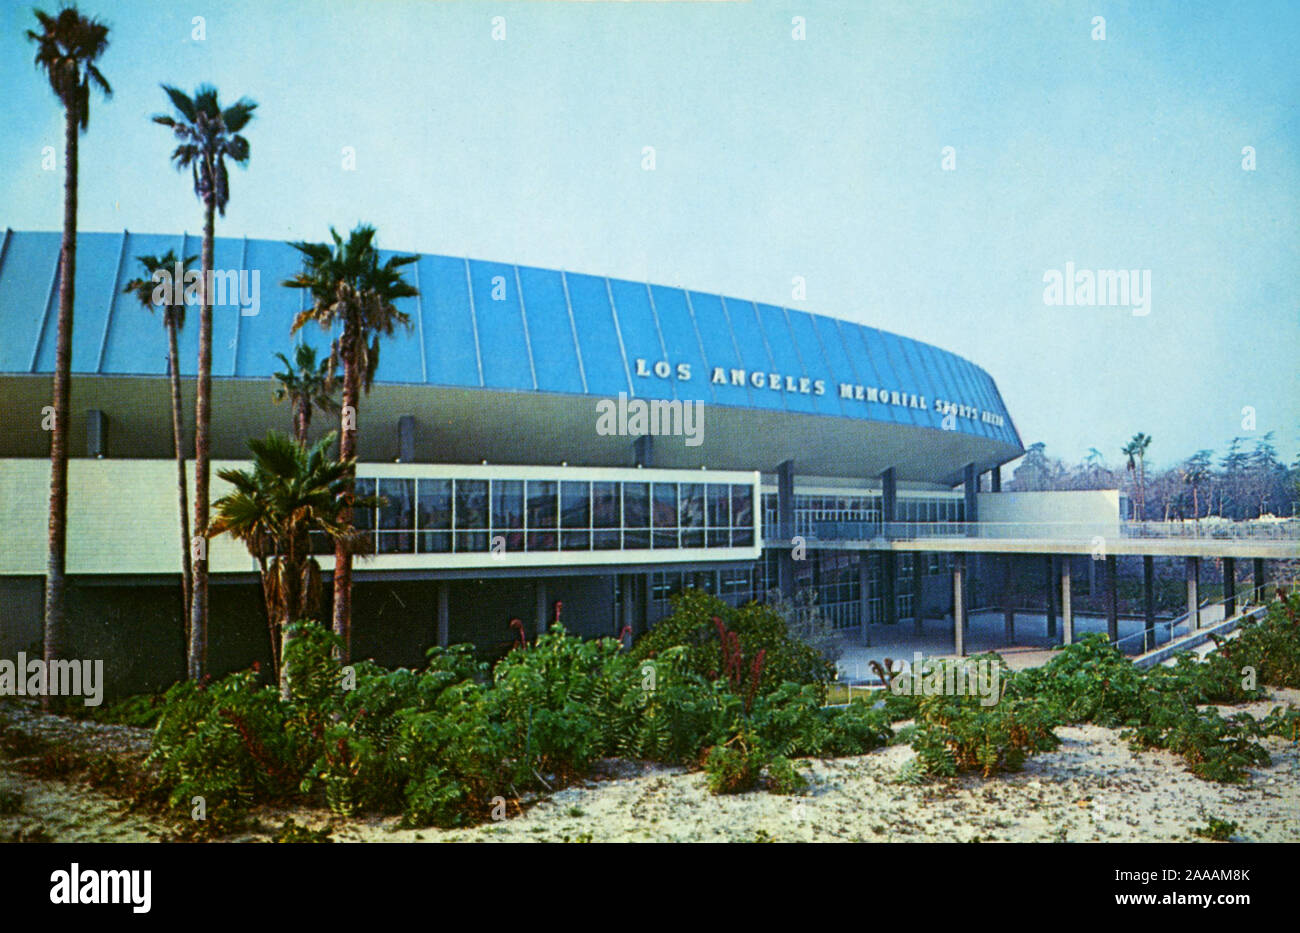 Le Los Angeles Memorial Sports Arena était autrefois la maison de la NBA L.A. Clippers, d'autres équipes sportives et de nombreux concerts de rock classique y compris les perfromances mémorable par Pink Floyd et Bruce Springsteen. Le bâtiment n'est plus. Banque D'Images